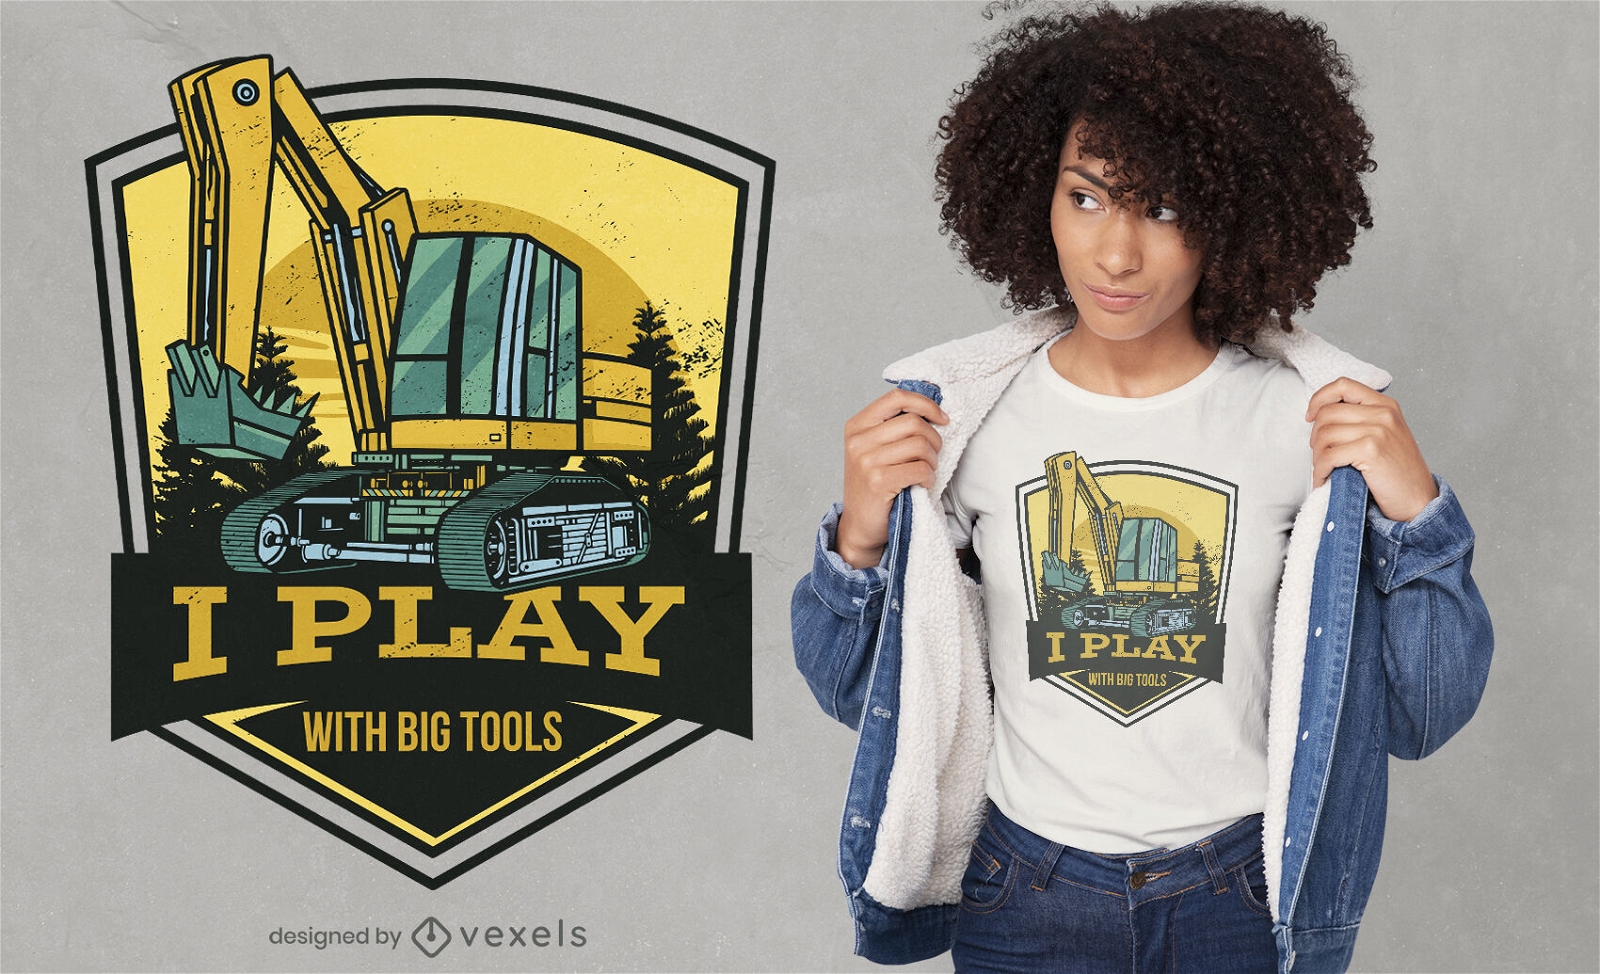 Spielen Sie mit dem T-Shirt-Design mit gro?en Werkzeugen